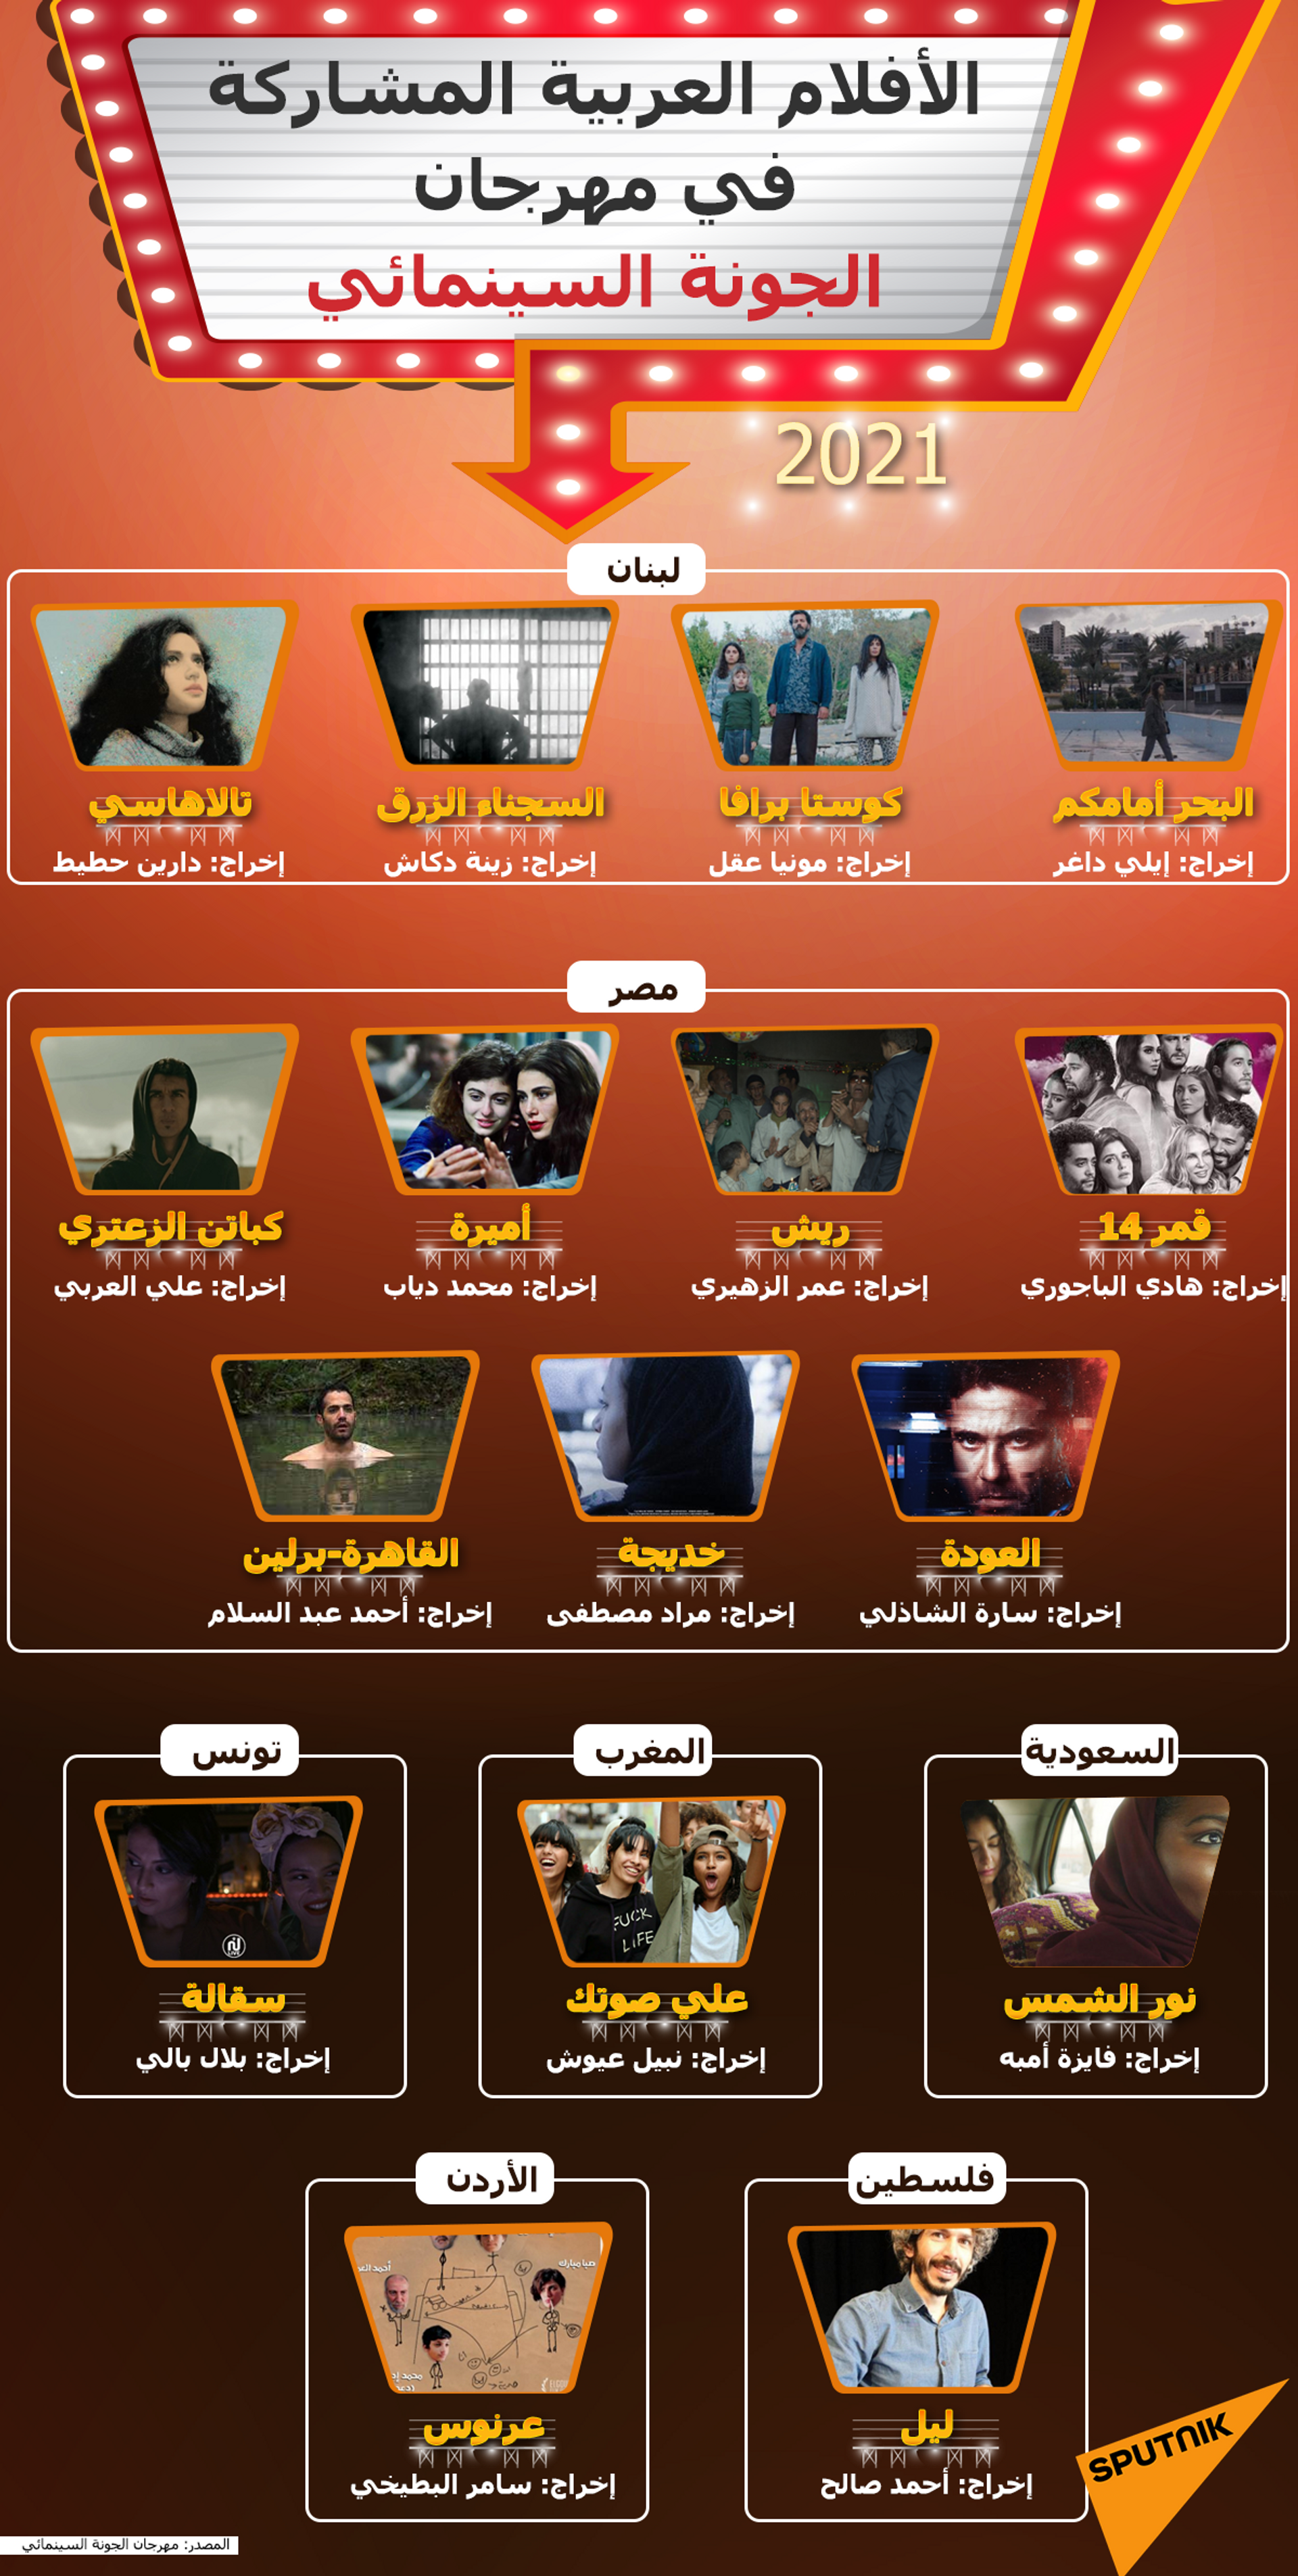 الأفلام العربية المشاركة في مهرجان الجونة السينمائي 2021 - سبوتنيك عربي, 1920, 14.09.2021